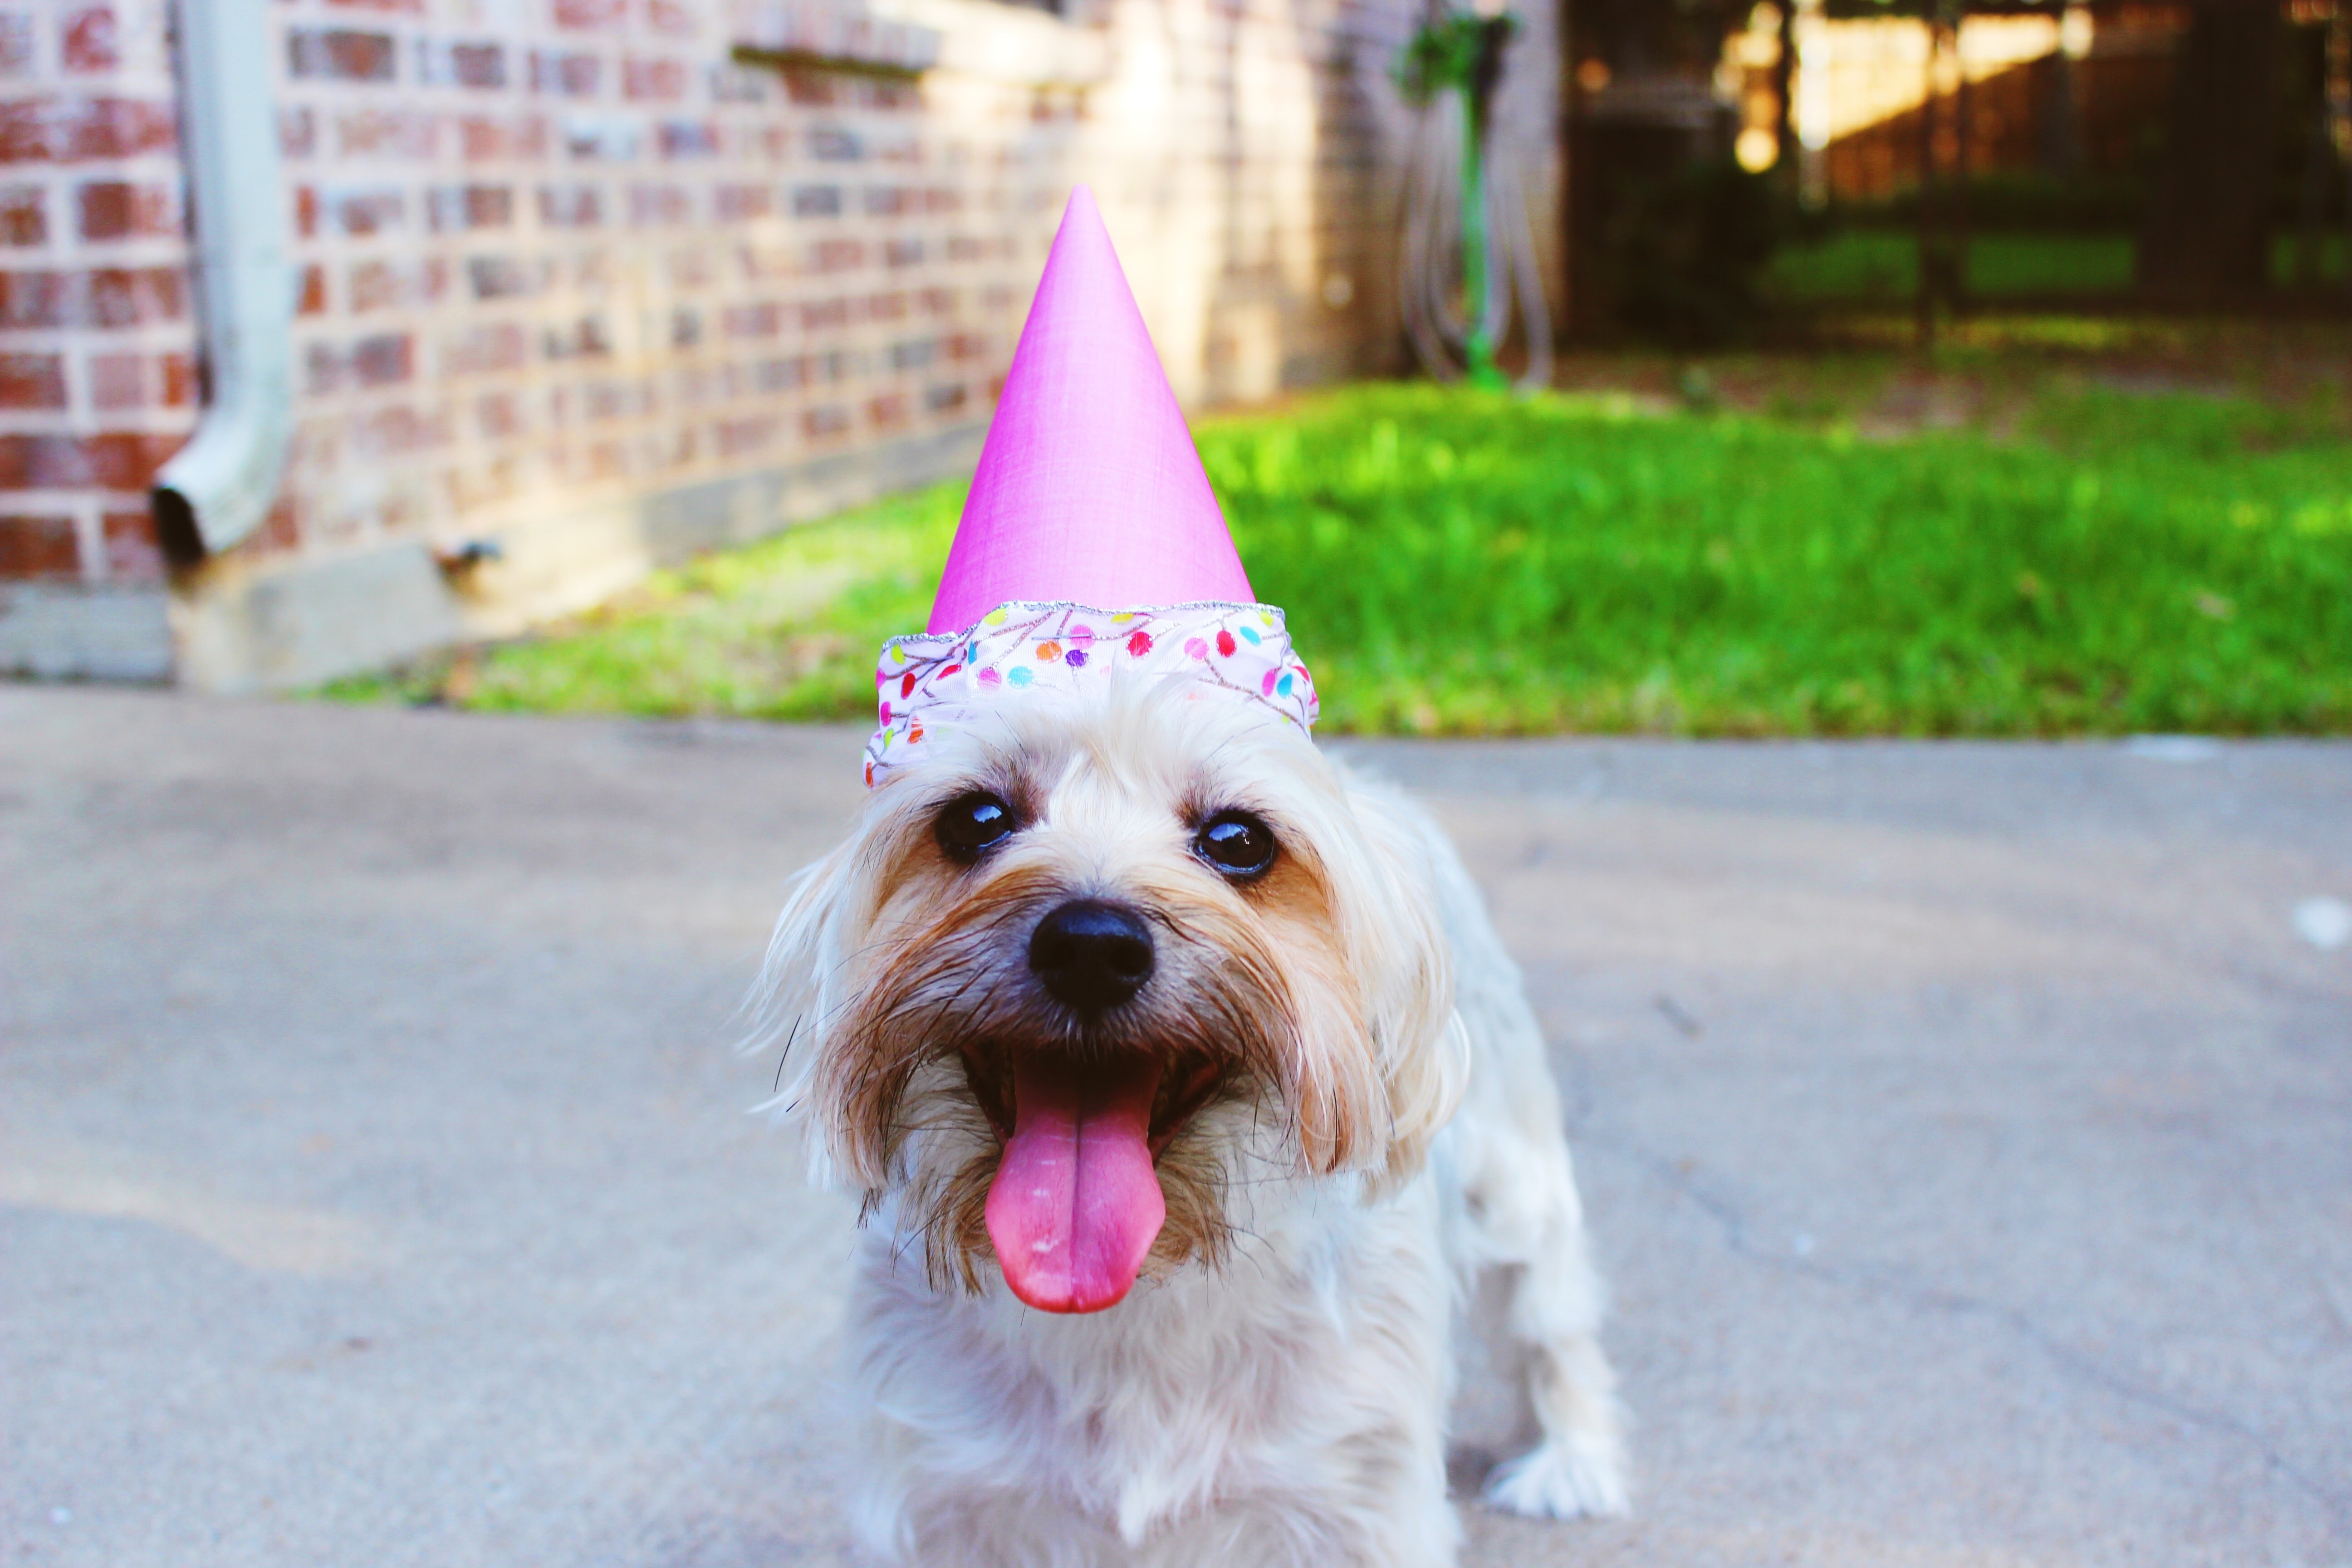 Cientistas criam novo método de calcular a idade humana de cachorros. Acima: cão sorri enquanto usa chapéu de aniversário  (Foto: Delaney Dawson/Unsplash)